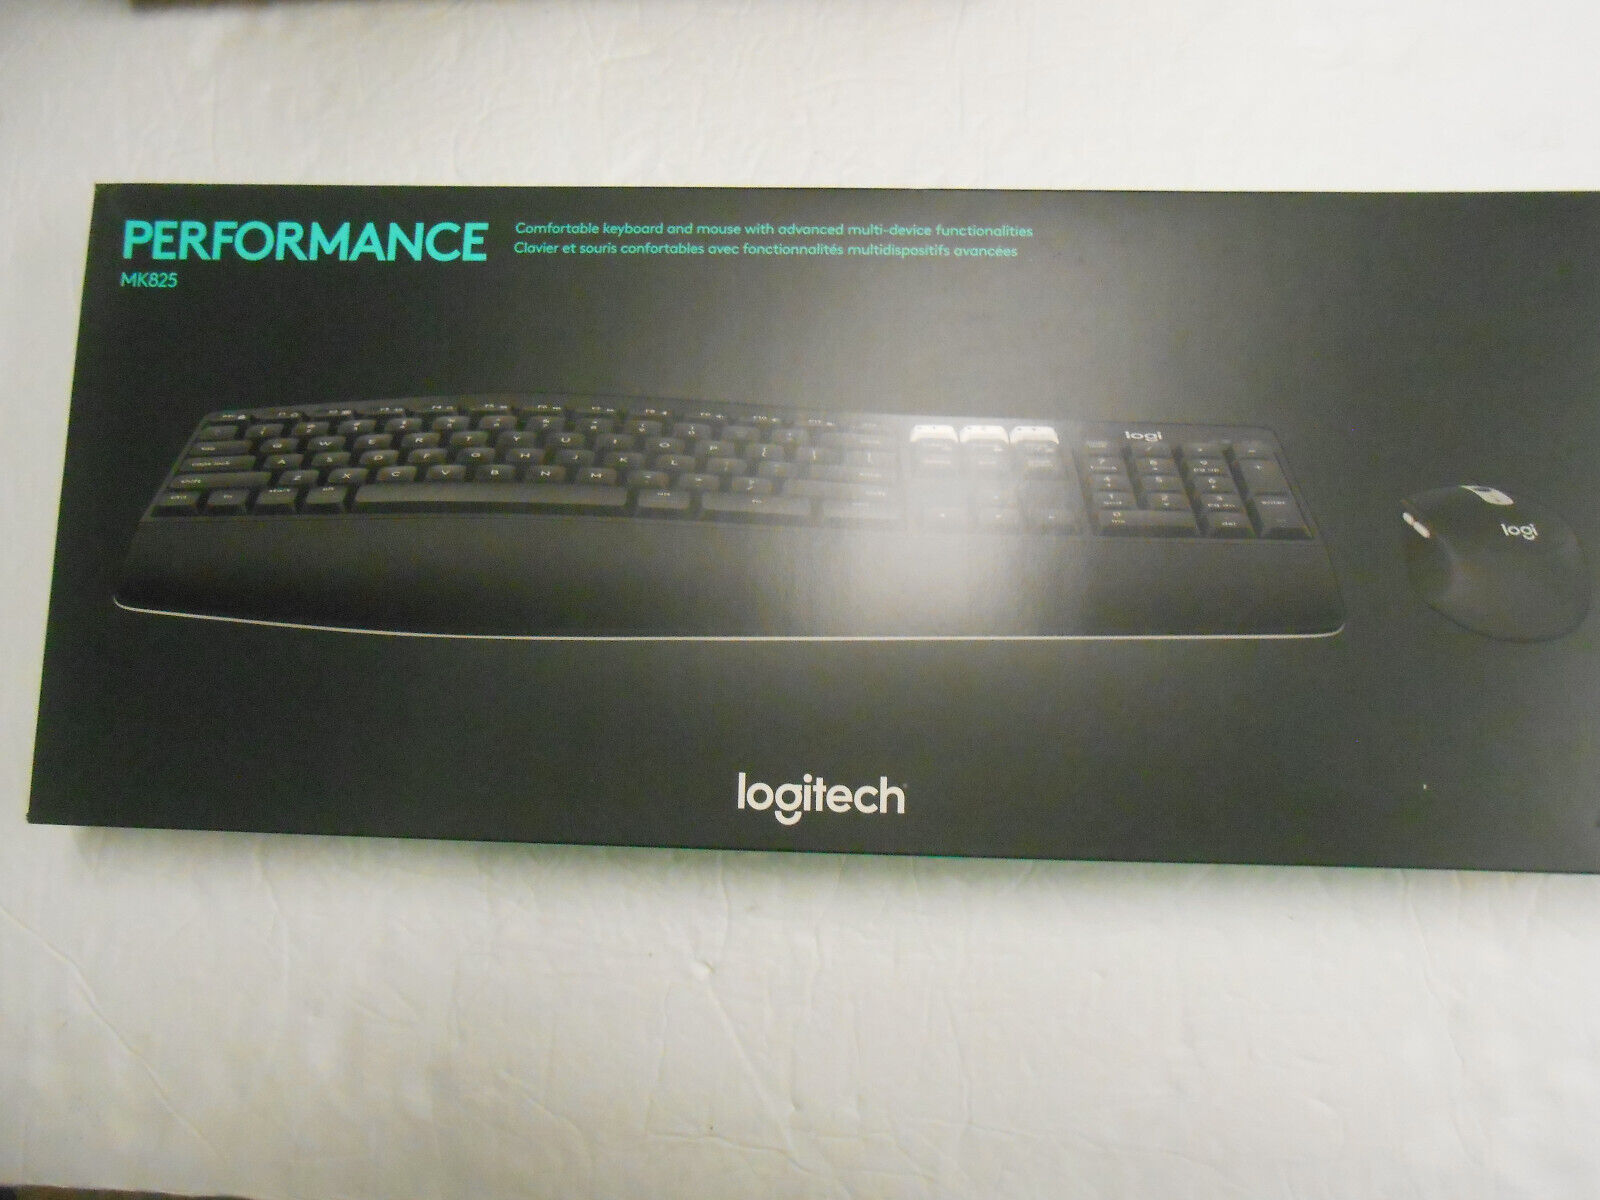 Logitech MK 825 Wireless Performance Keyboard # 920-009442